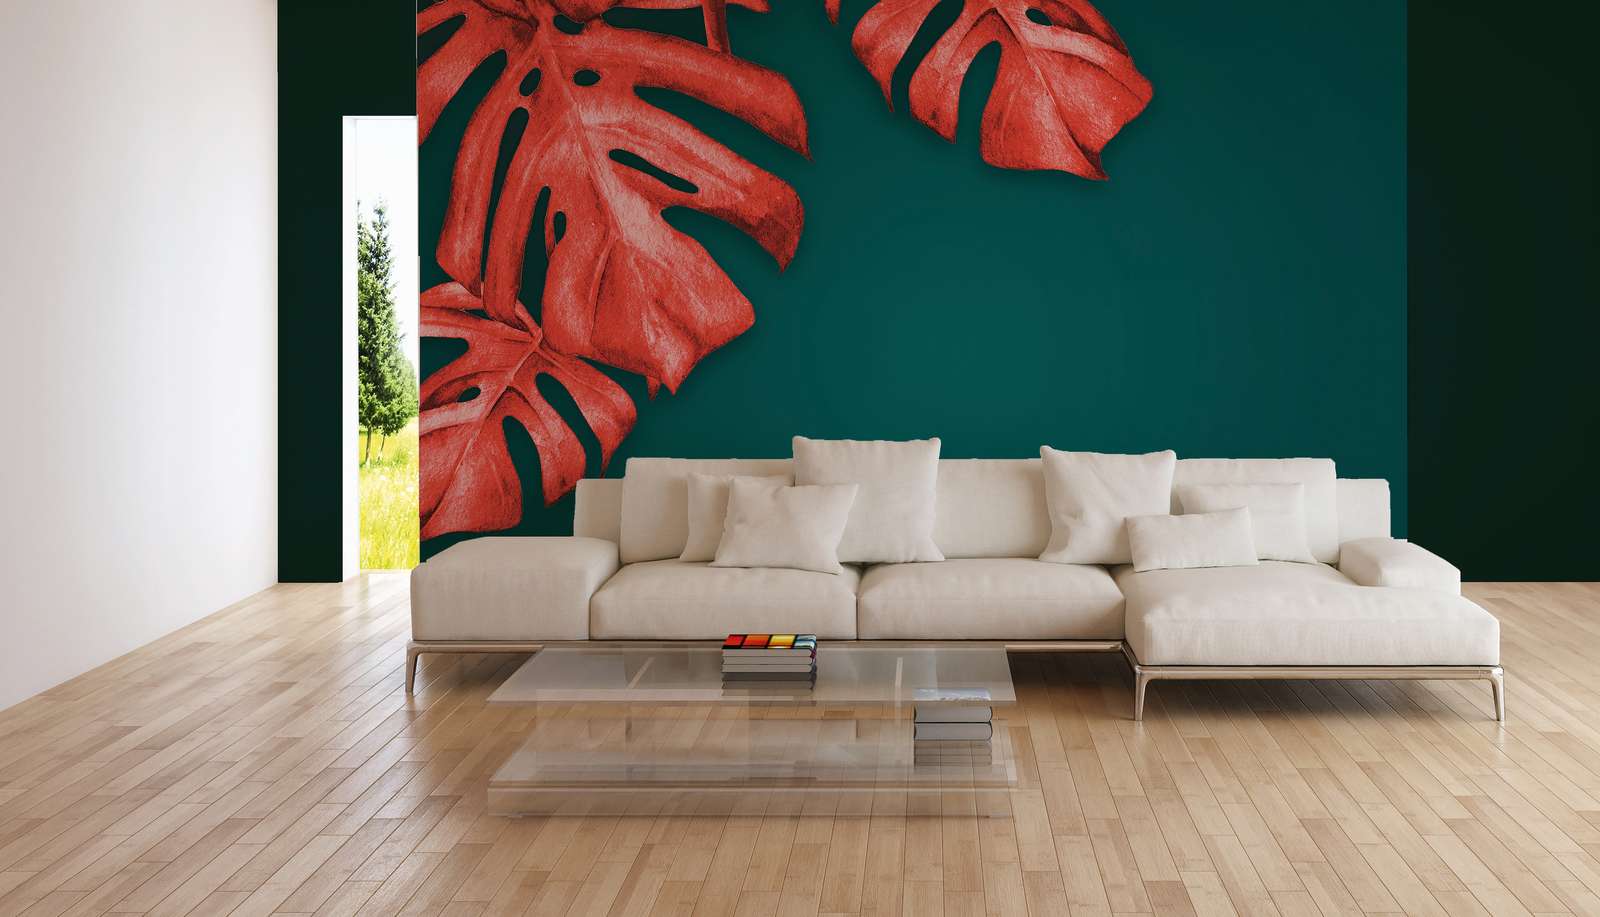             Papier peint panoramique avec palmier dessiné - rouge, turquoise
        